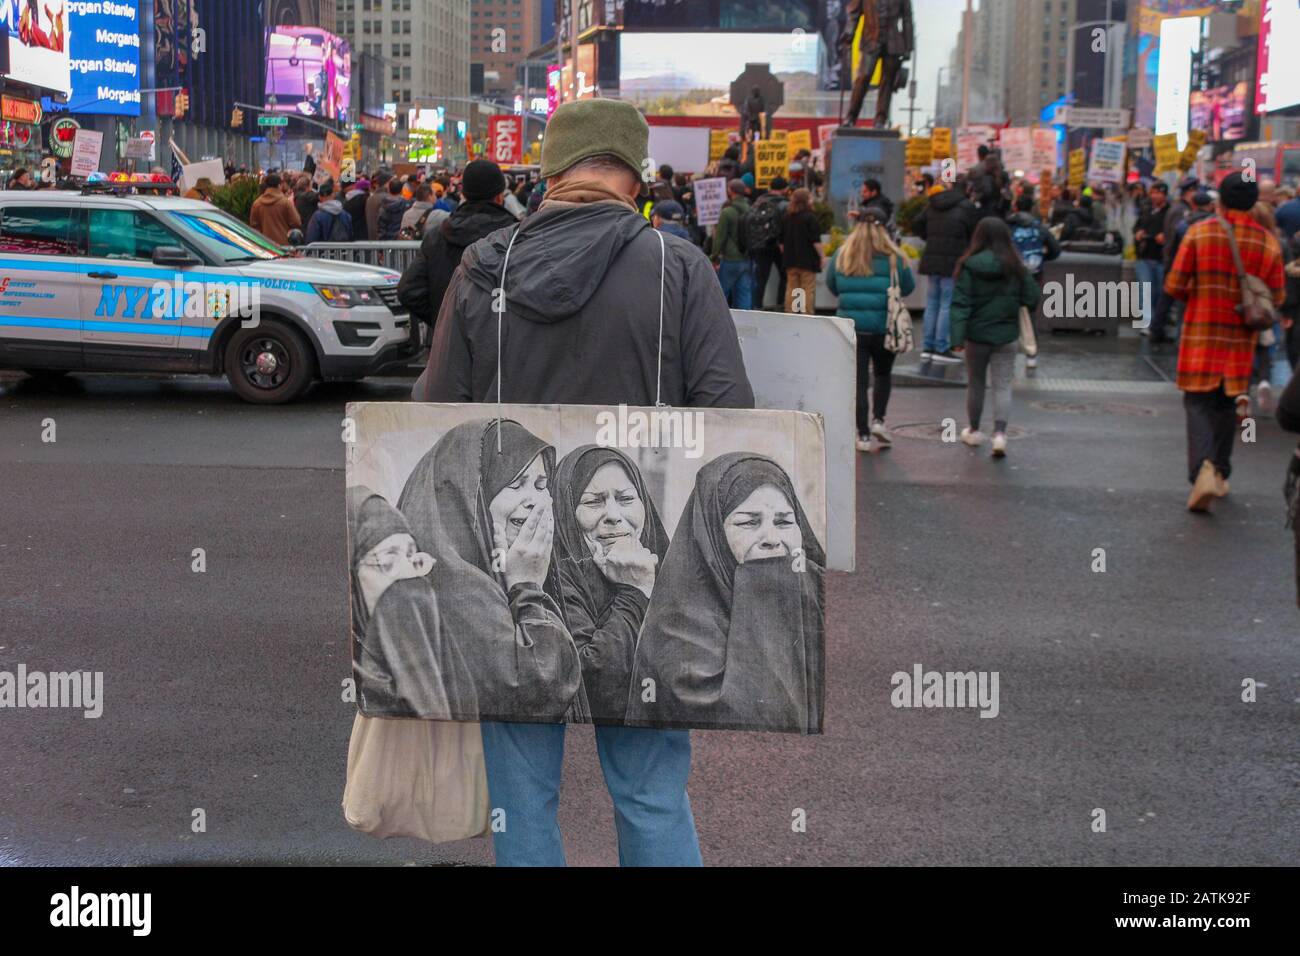 Des manifestants sont descendus dans les rues de New York à Times Sq pour protester contre le meurtre par l'administration Trump d'un général iranien de premier plan le 4 janvier 2020. Banque D'Images